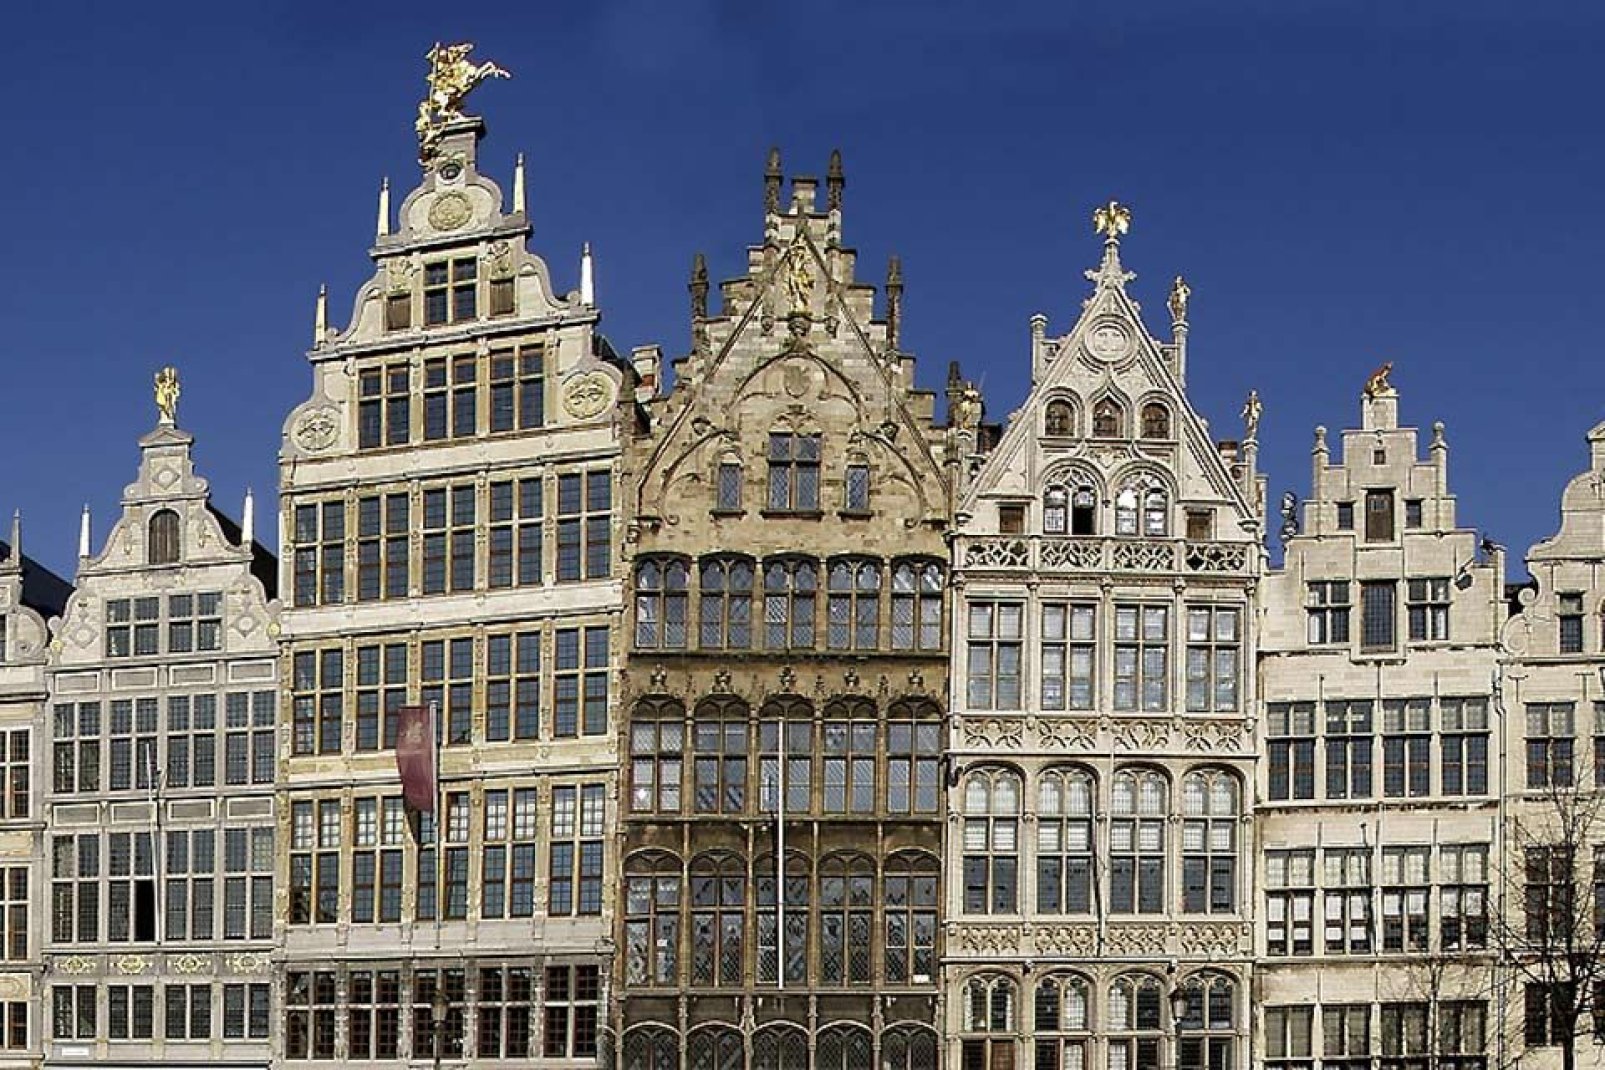 Nella Grand-Place di Anversa, i turisti possono ammirare le abitazioni delle gilde e delle corporazioni del XVI secolo.